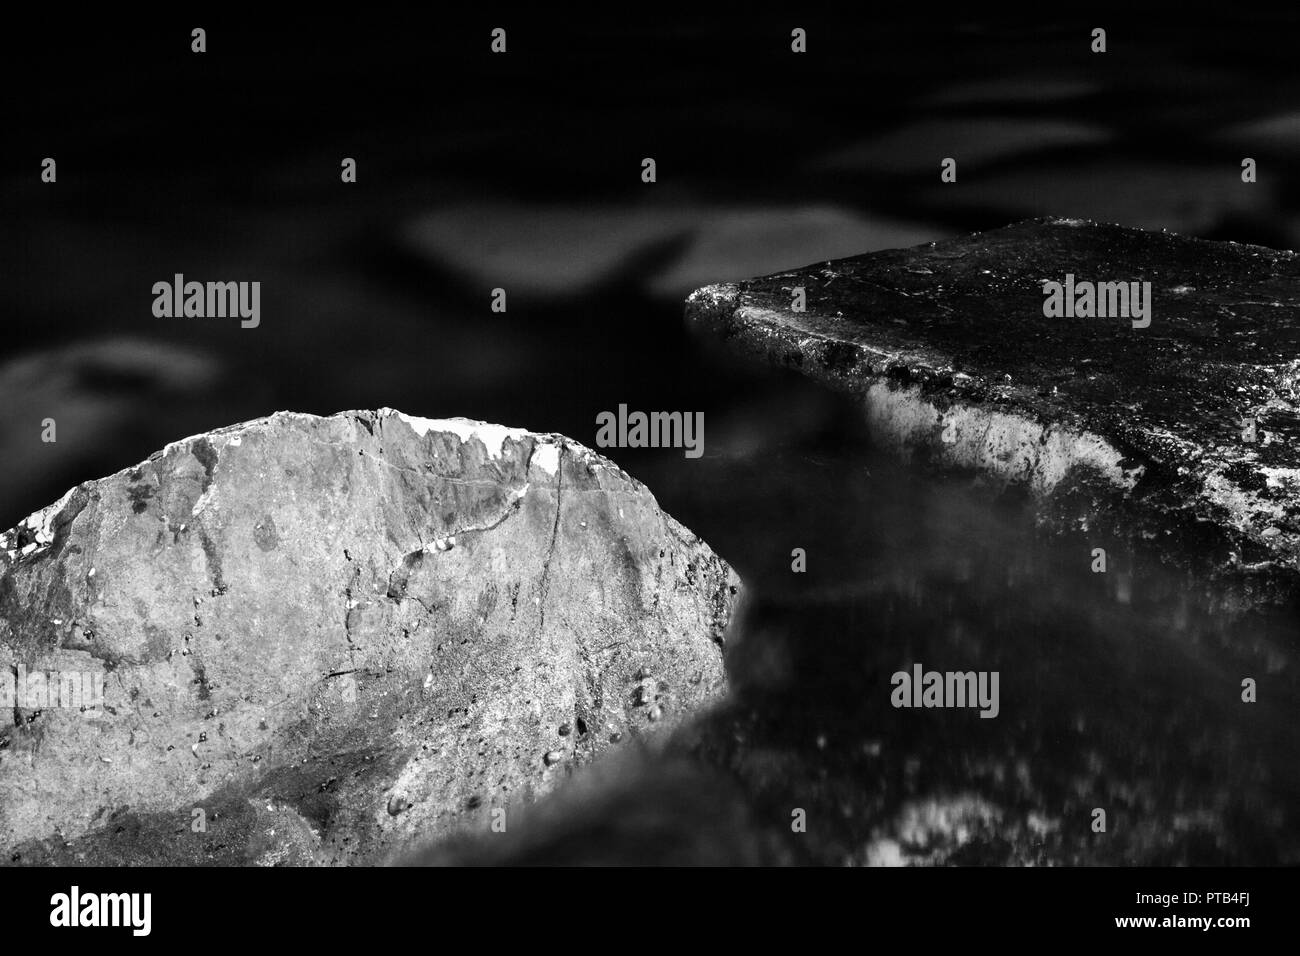 Schwarz und Weiß, monochrom, Abstract, Nacht Zusammensetzung der Steine im Wasser. Schwärze und Atmosphäre der Ruhe in der felsigen Landschaft. Stockfoto